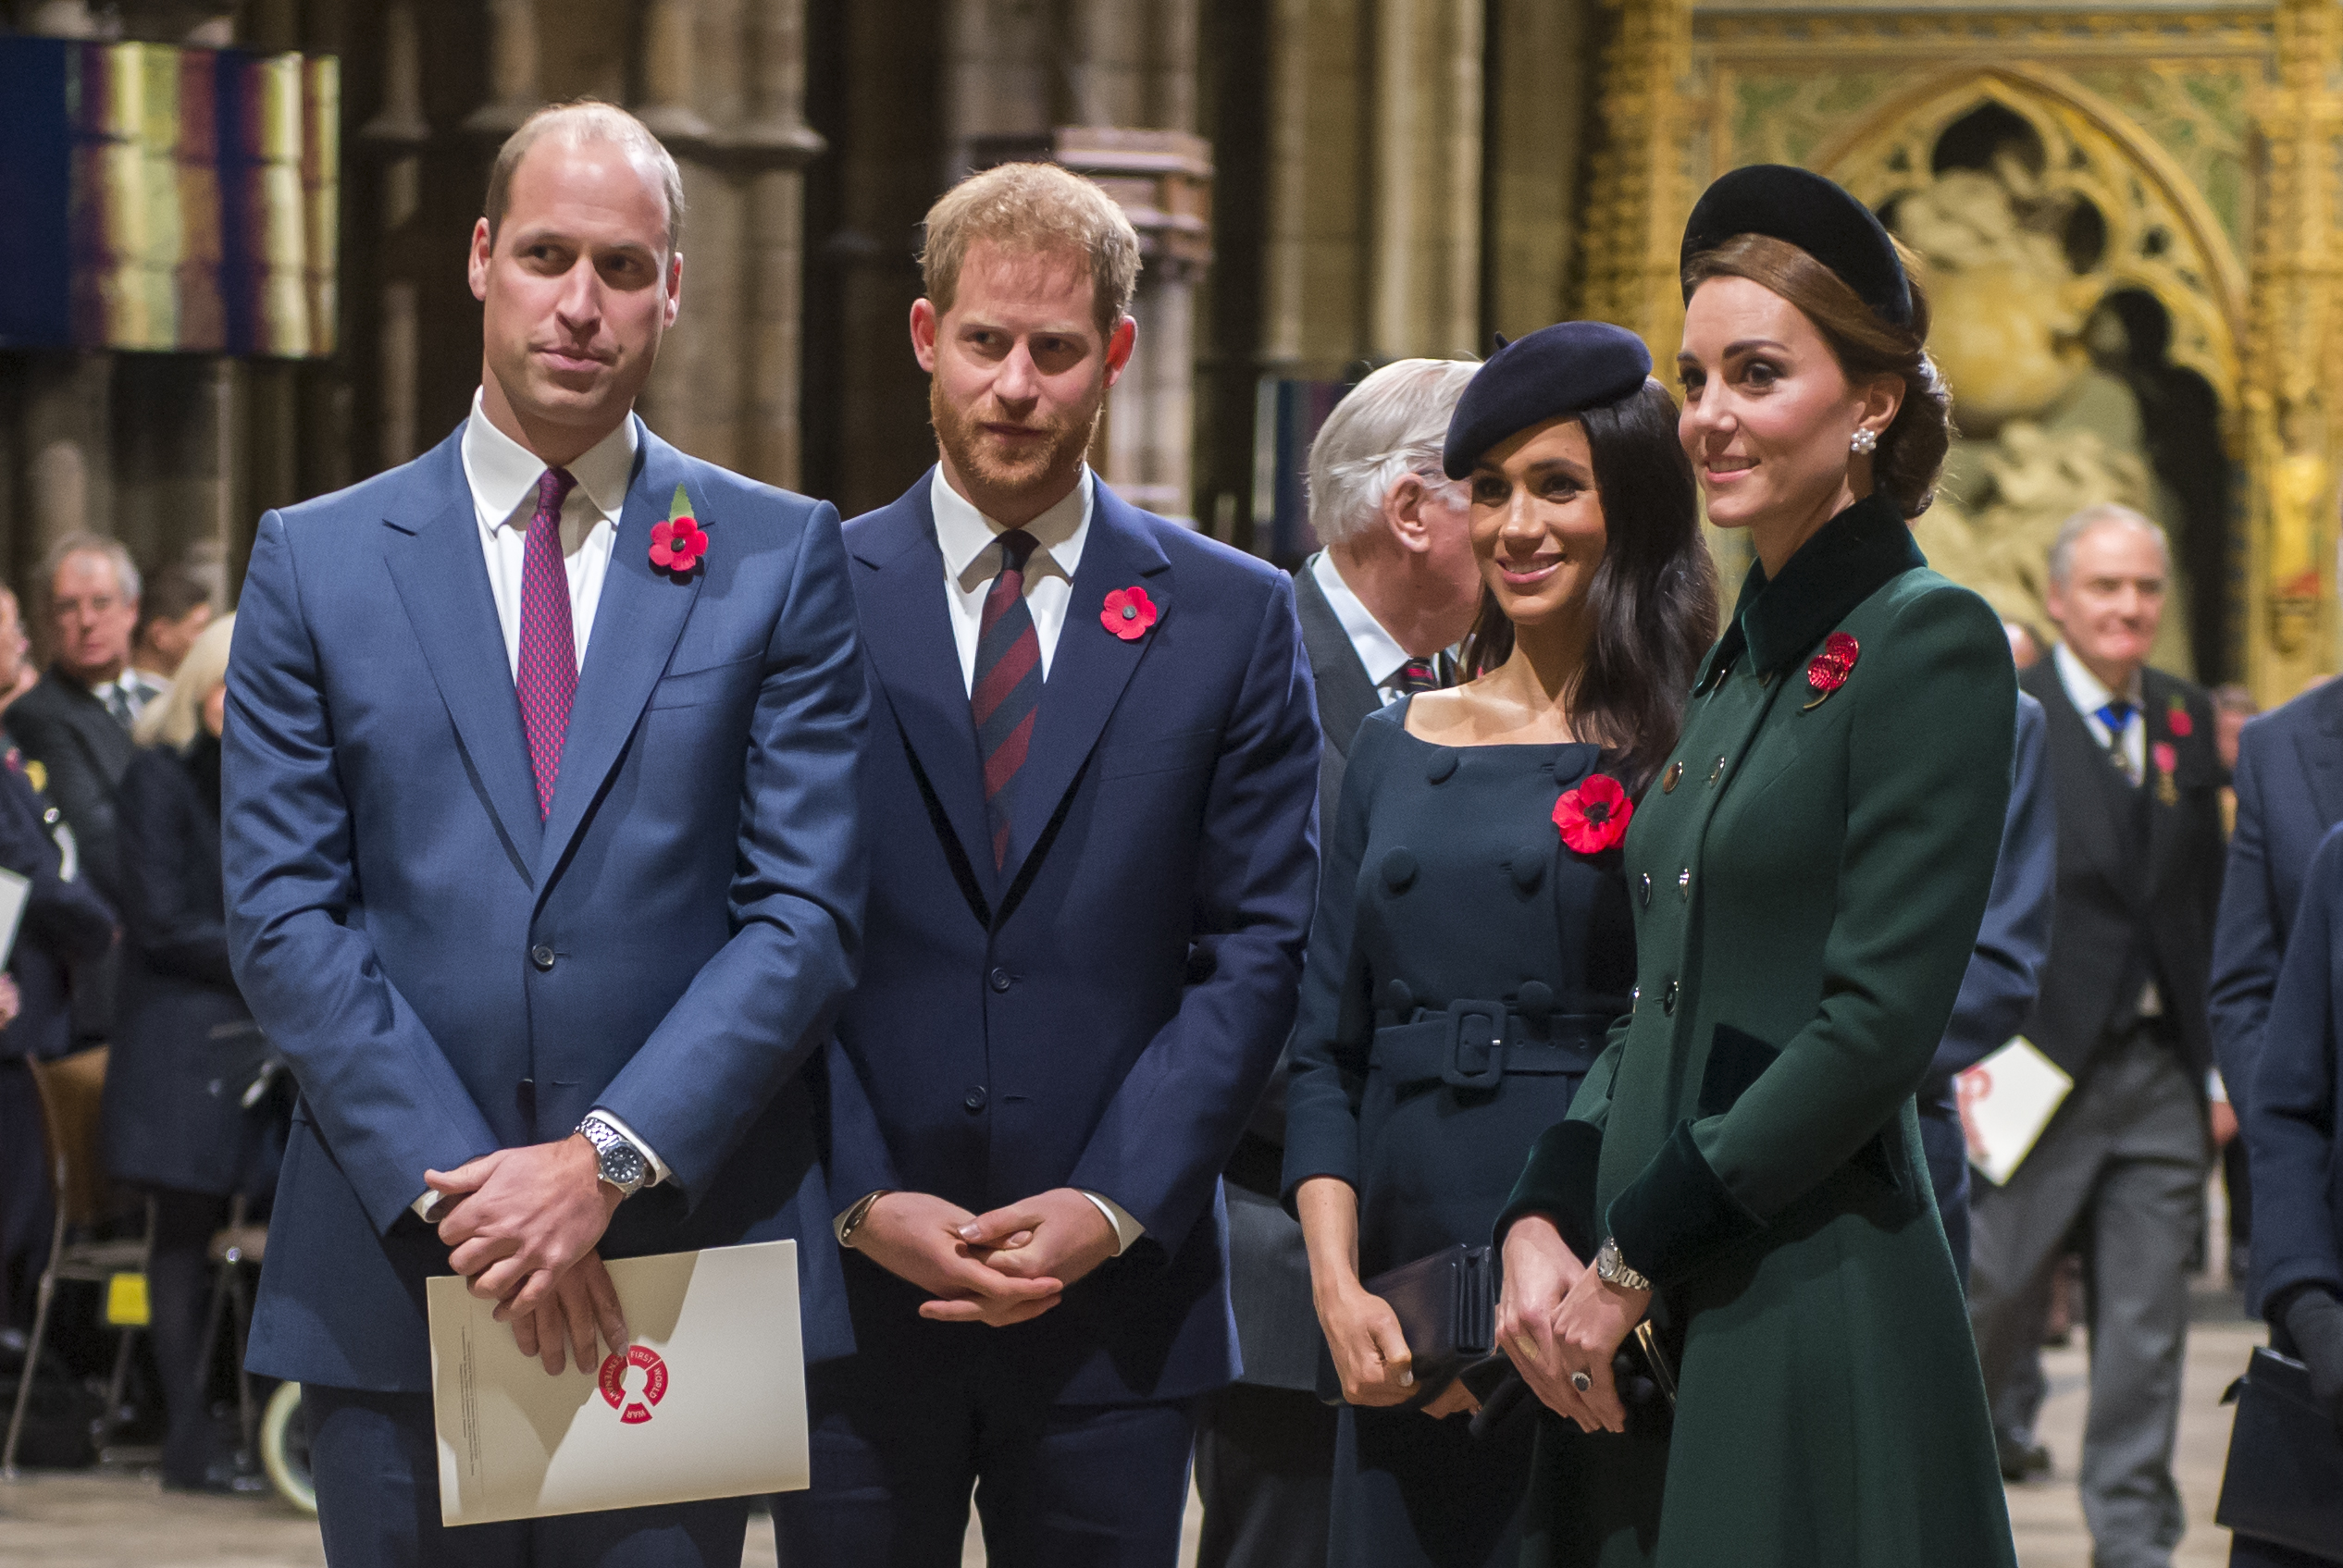 Prințul William, Prințul Harry, Meghan Markle și Kate Middleton, 2018, în Westminster Abbey. Cele două cupluri au participat la Remembrance Day, în onoarea veteranilor din Primul Război Mondial. William a purtat un costum albastru deschis, Harry un costum albastru închis, Meghan o rochie albastru închis și Kate un palton verde